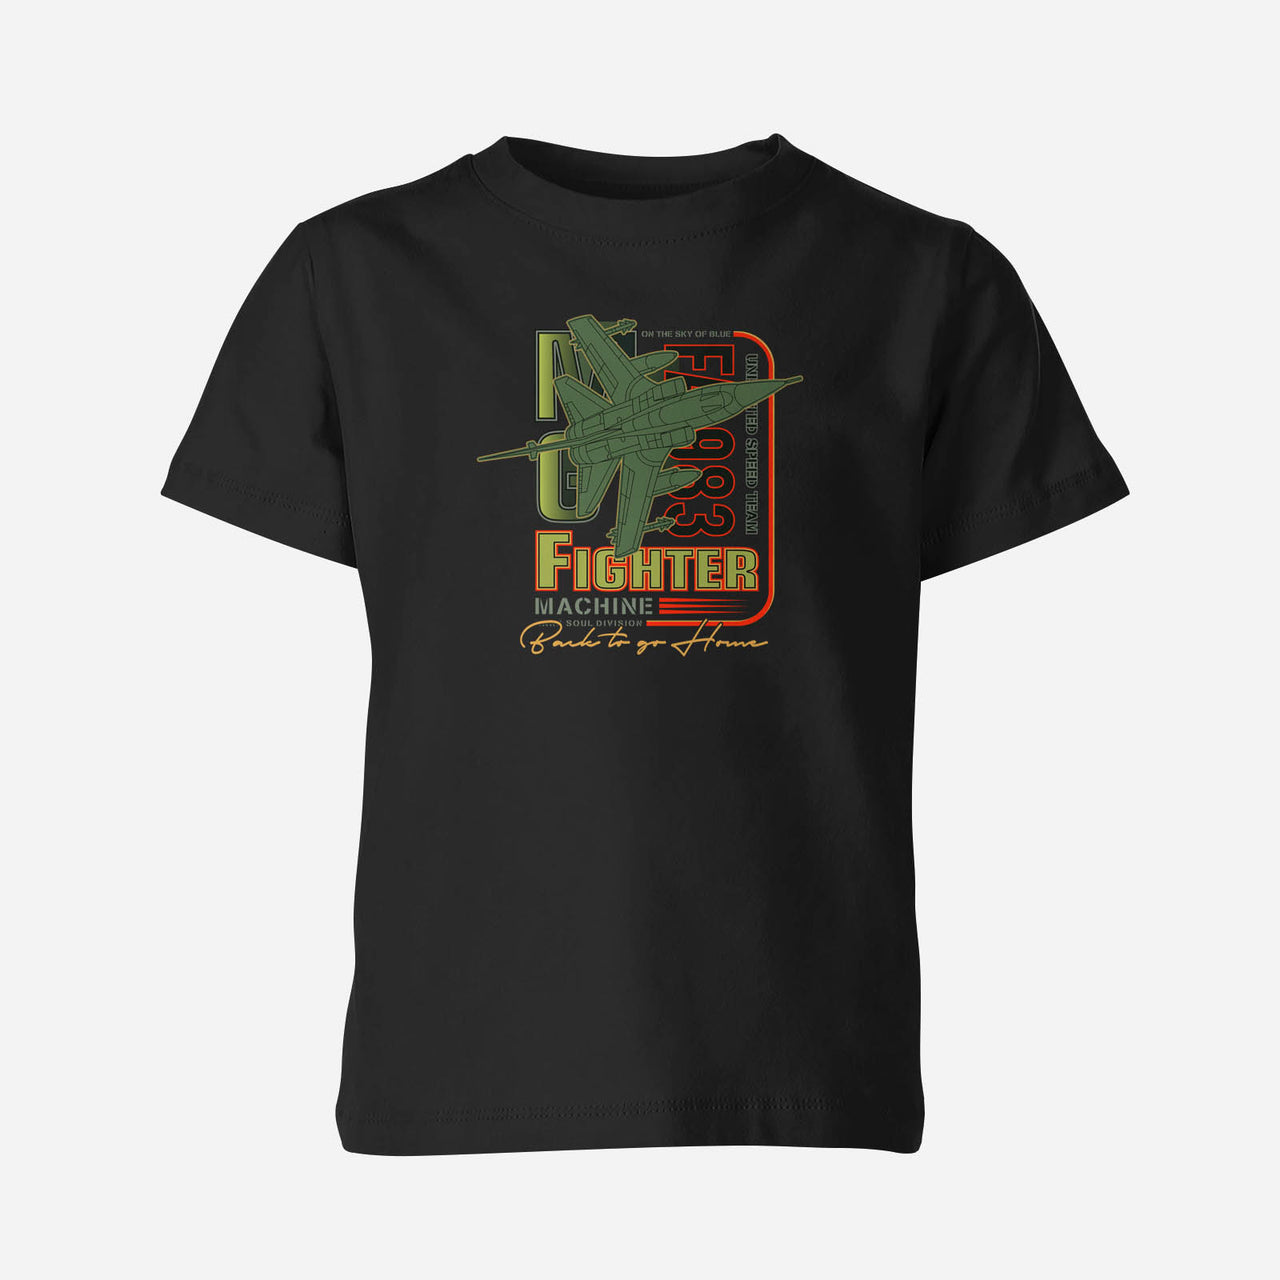 Fighter Machine Designed Children T-Shirts